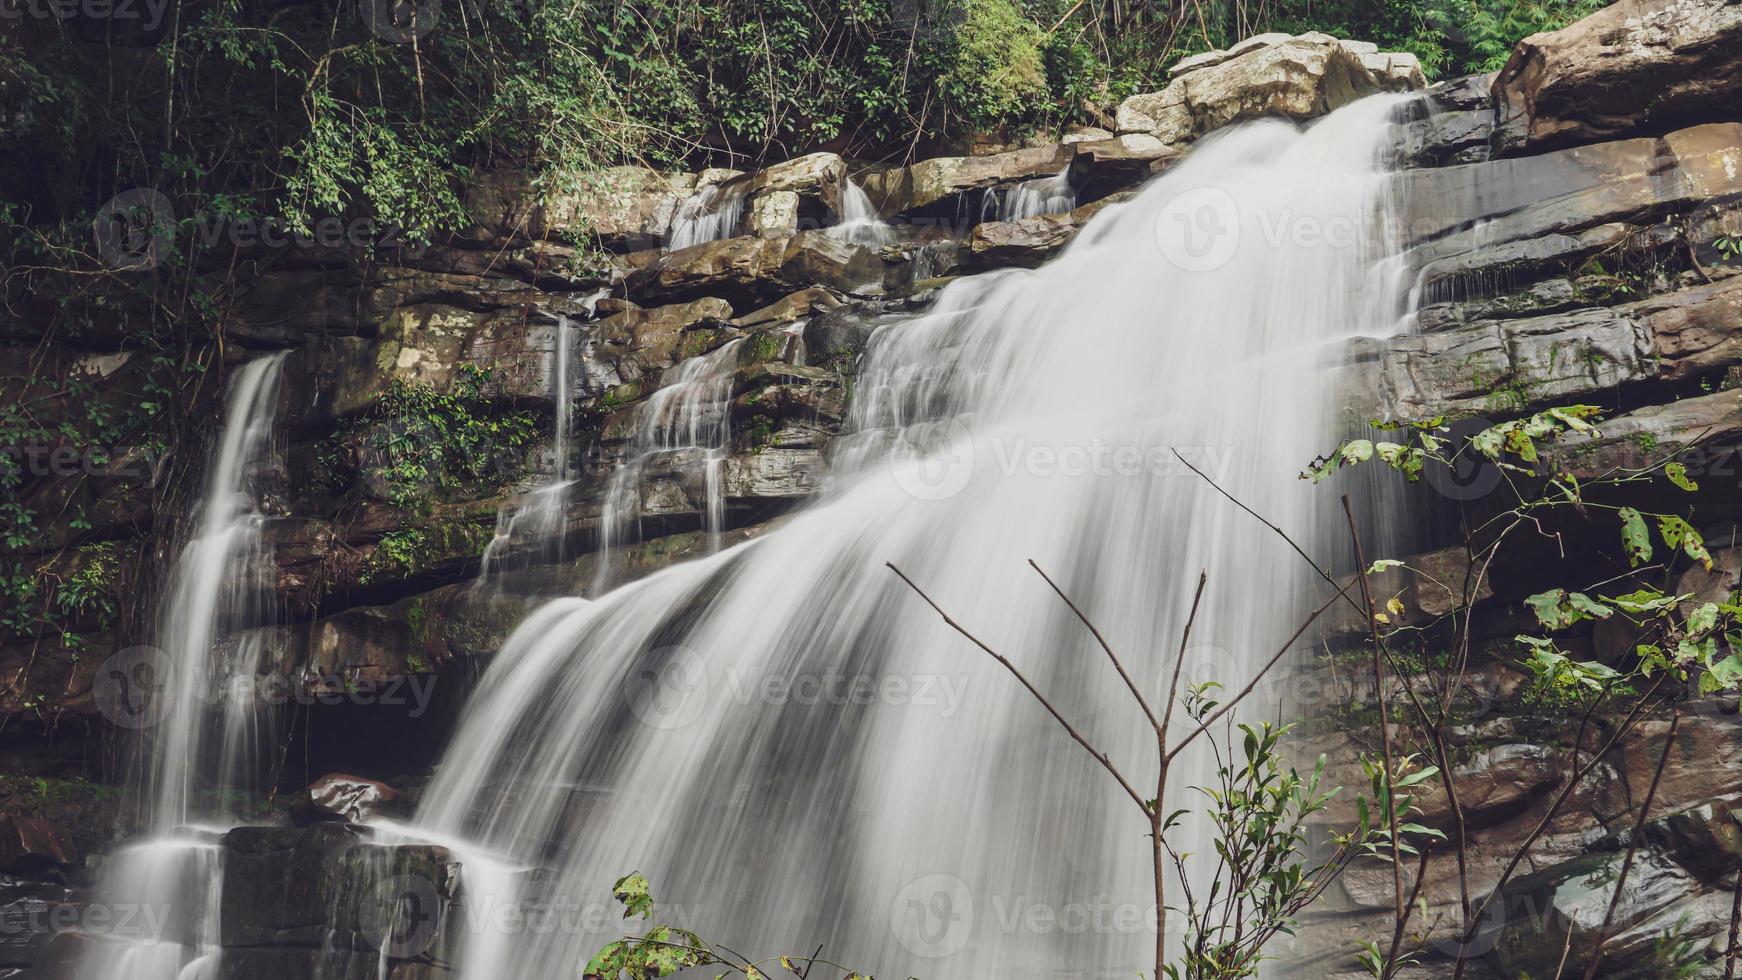 Der Wasserfall im großen Wald ist sehr schön und während der Regenzeit weniger bekannt und gefährlich. foto